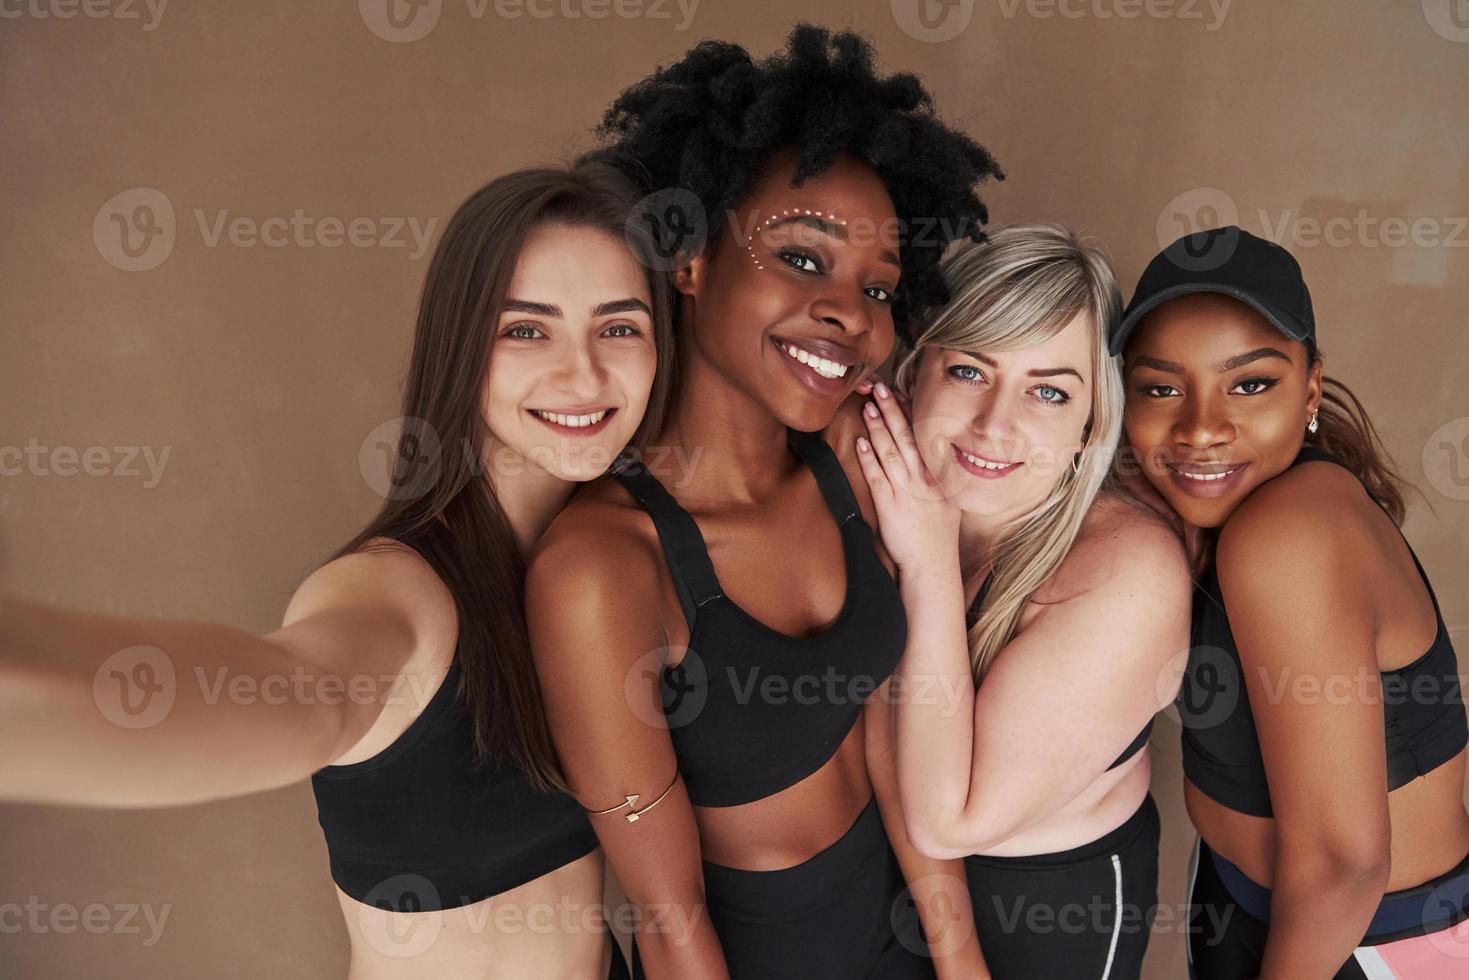 plus besoin de photographe. groupe de femmes multiethniques debout dans le studio sur fond marron photo